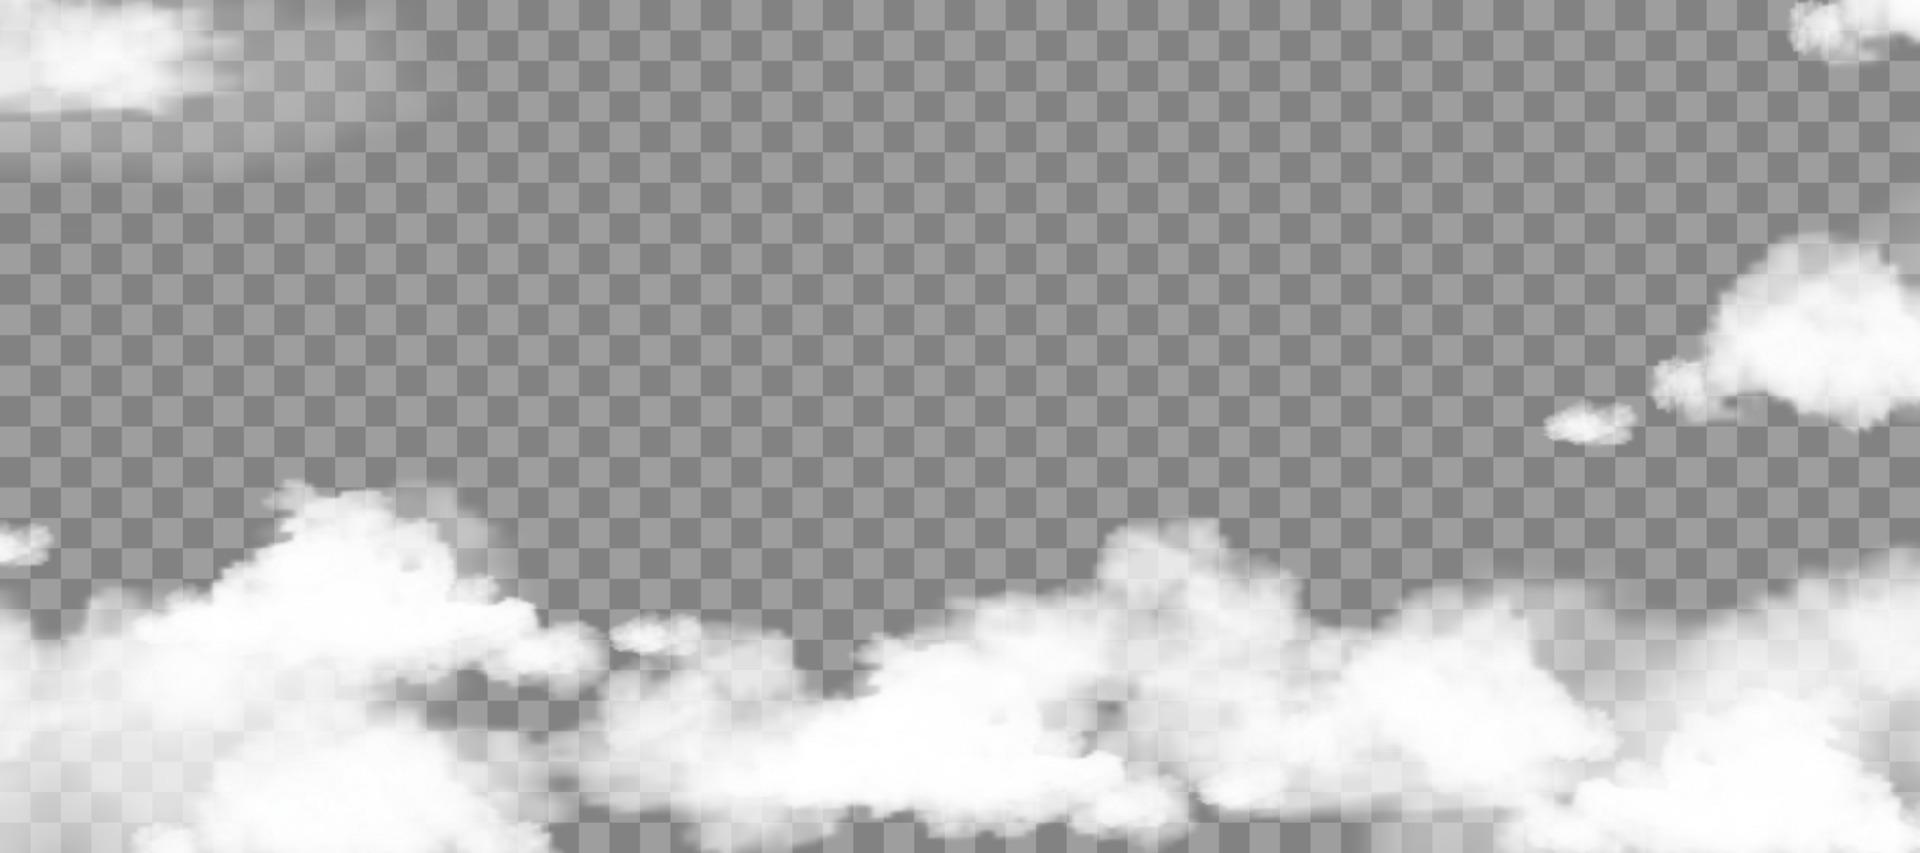 cielo de nubes blancas y esponjosas aislado en un fondo transparente para la decoración de la plantilla de fondo o la cobertura de banners web, elementos de ilustración vectorial del paisaje nuboso natural suave de humo o tormenta de truenos vector